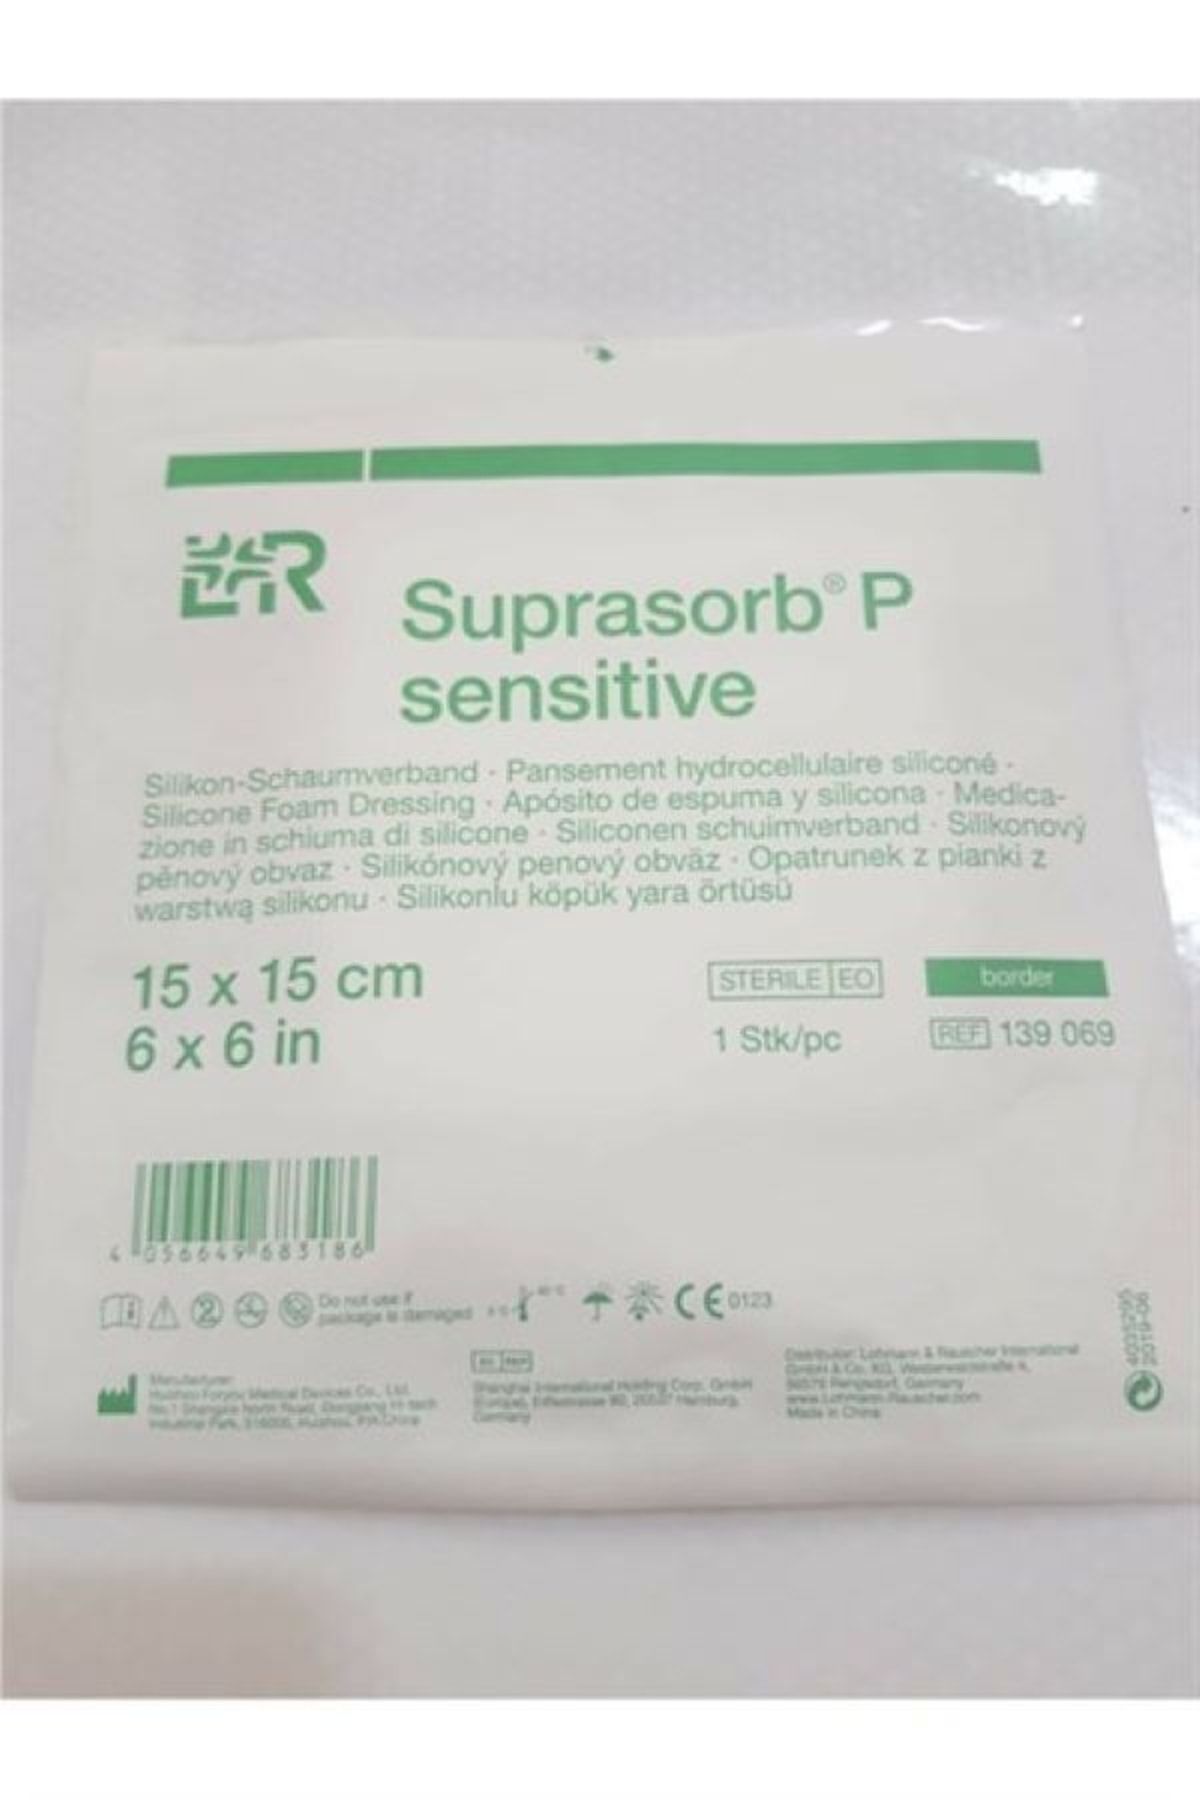 LR Suprasorb P Sensitive 15x15 Köpük Yara Örtüsü Yapışkanlı 3 Adet